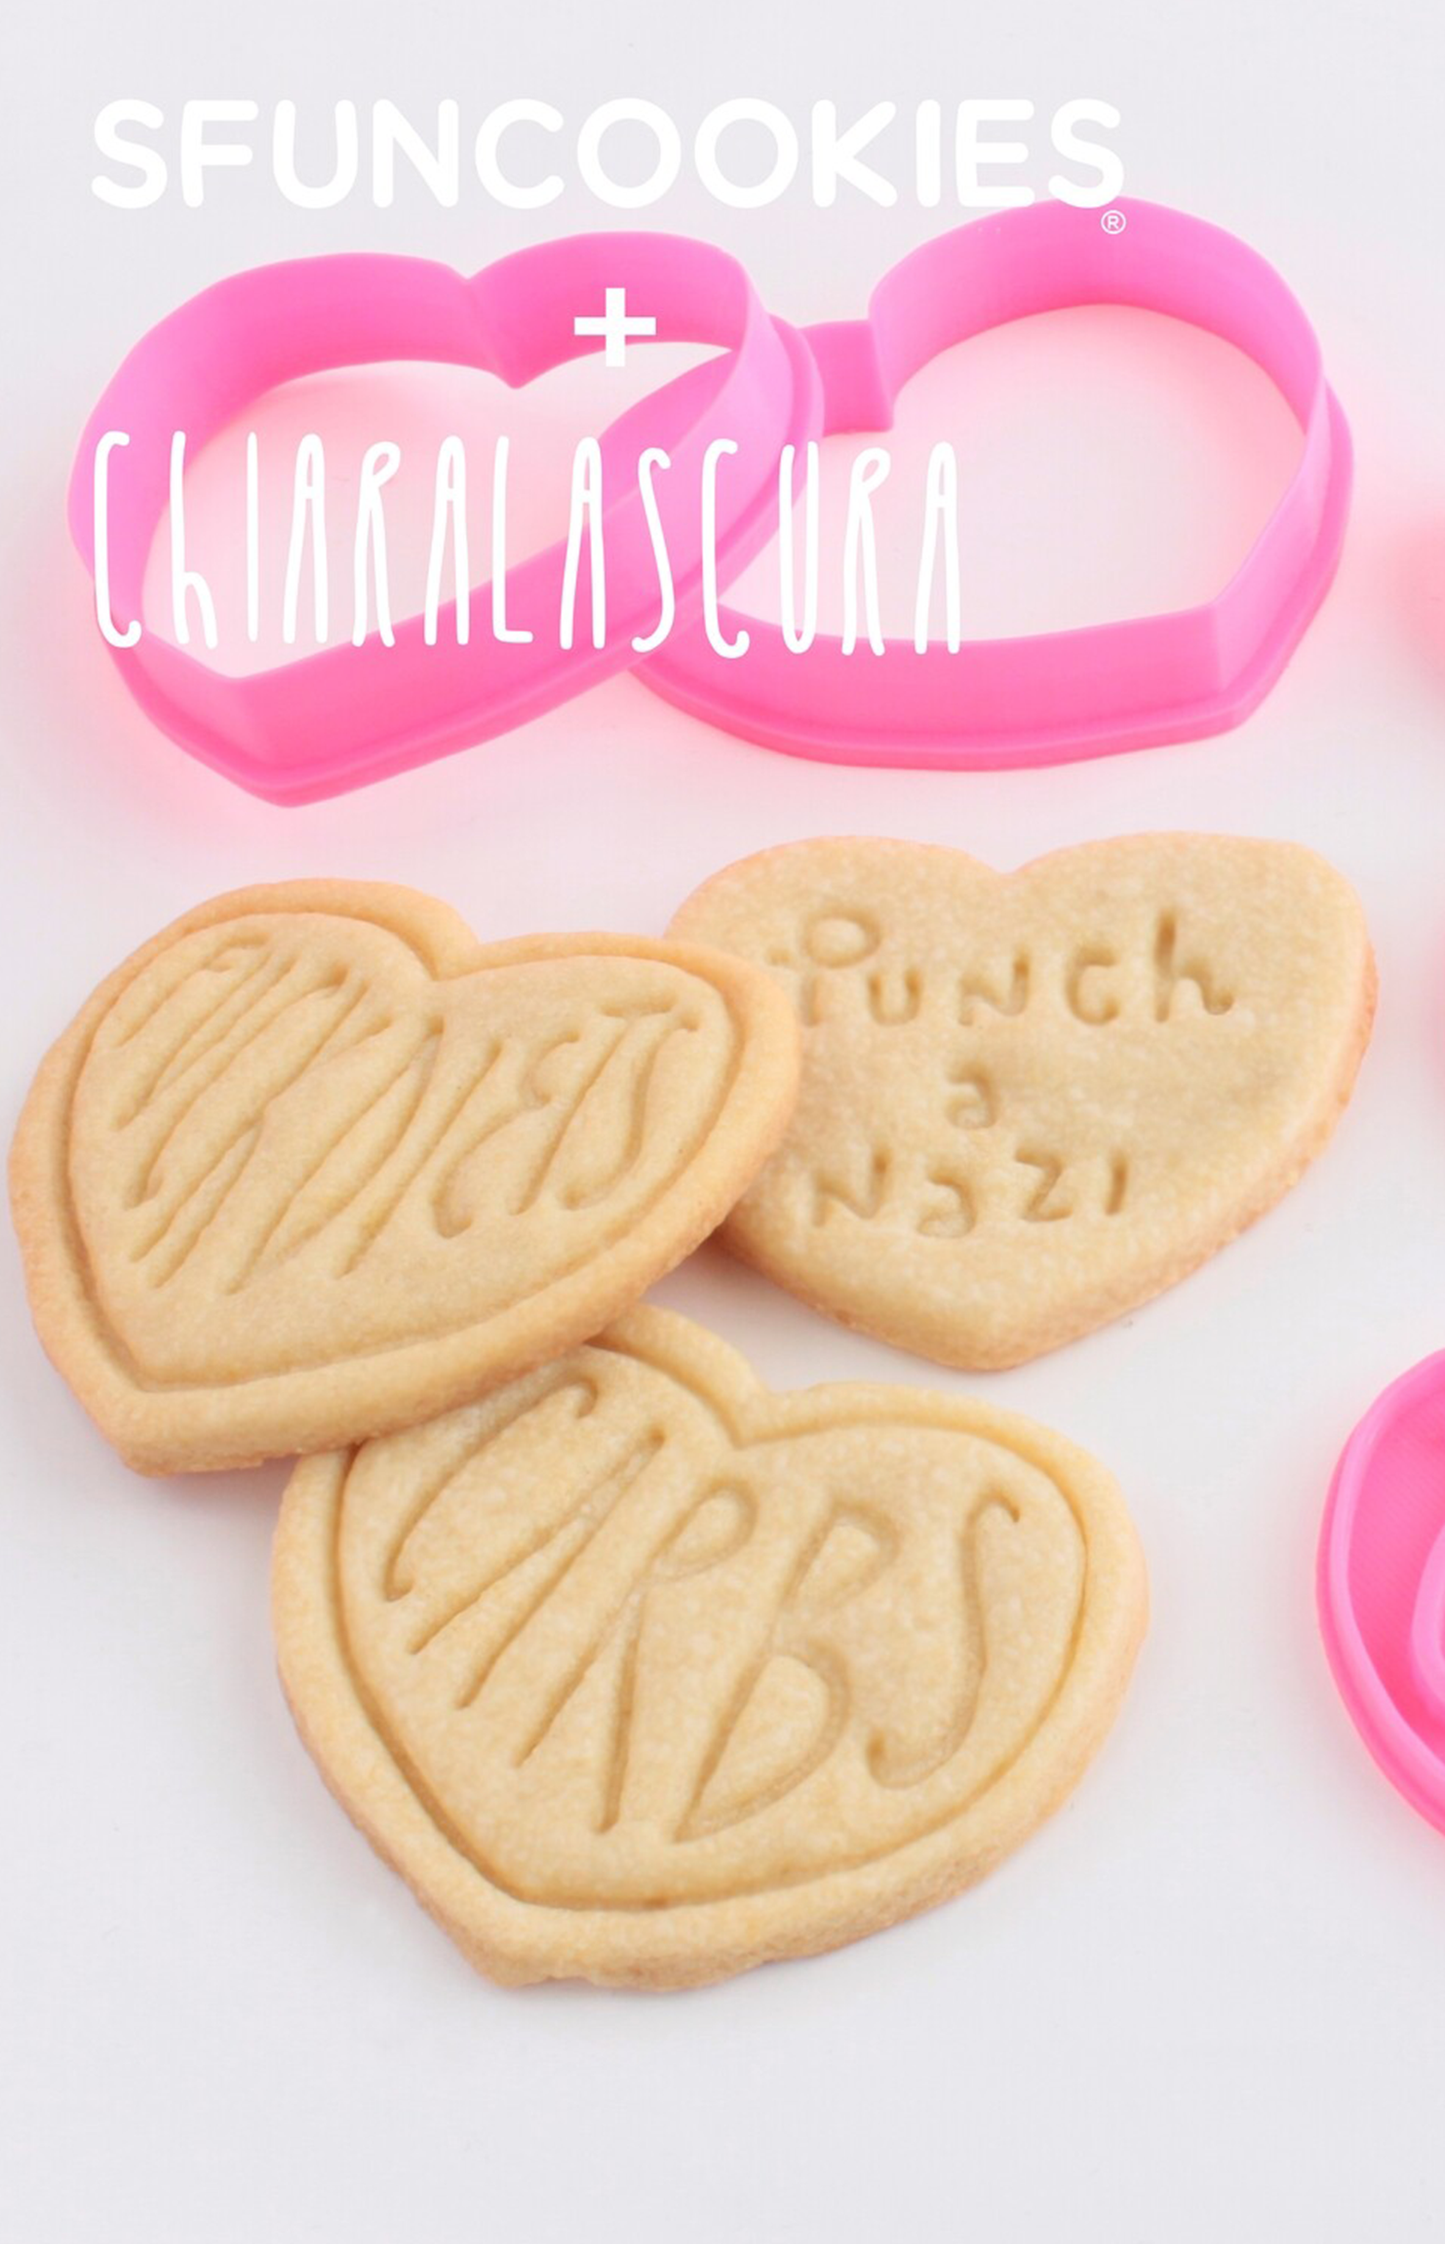 SOLDOUT Sfuncookies + Chiaralascura - Cutter per biscotti riottosi